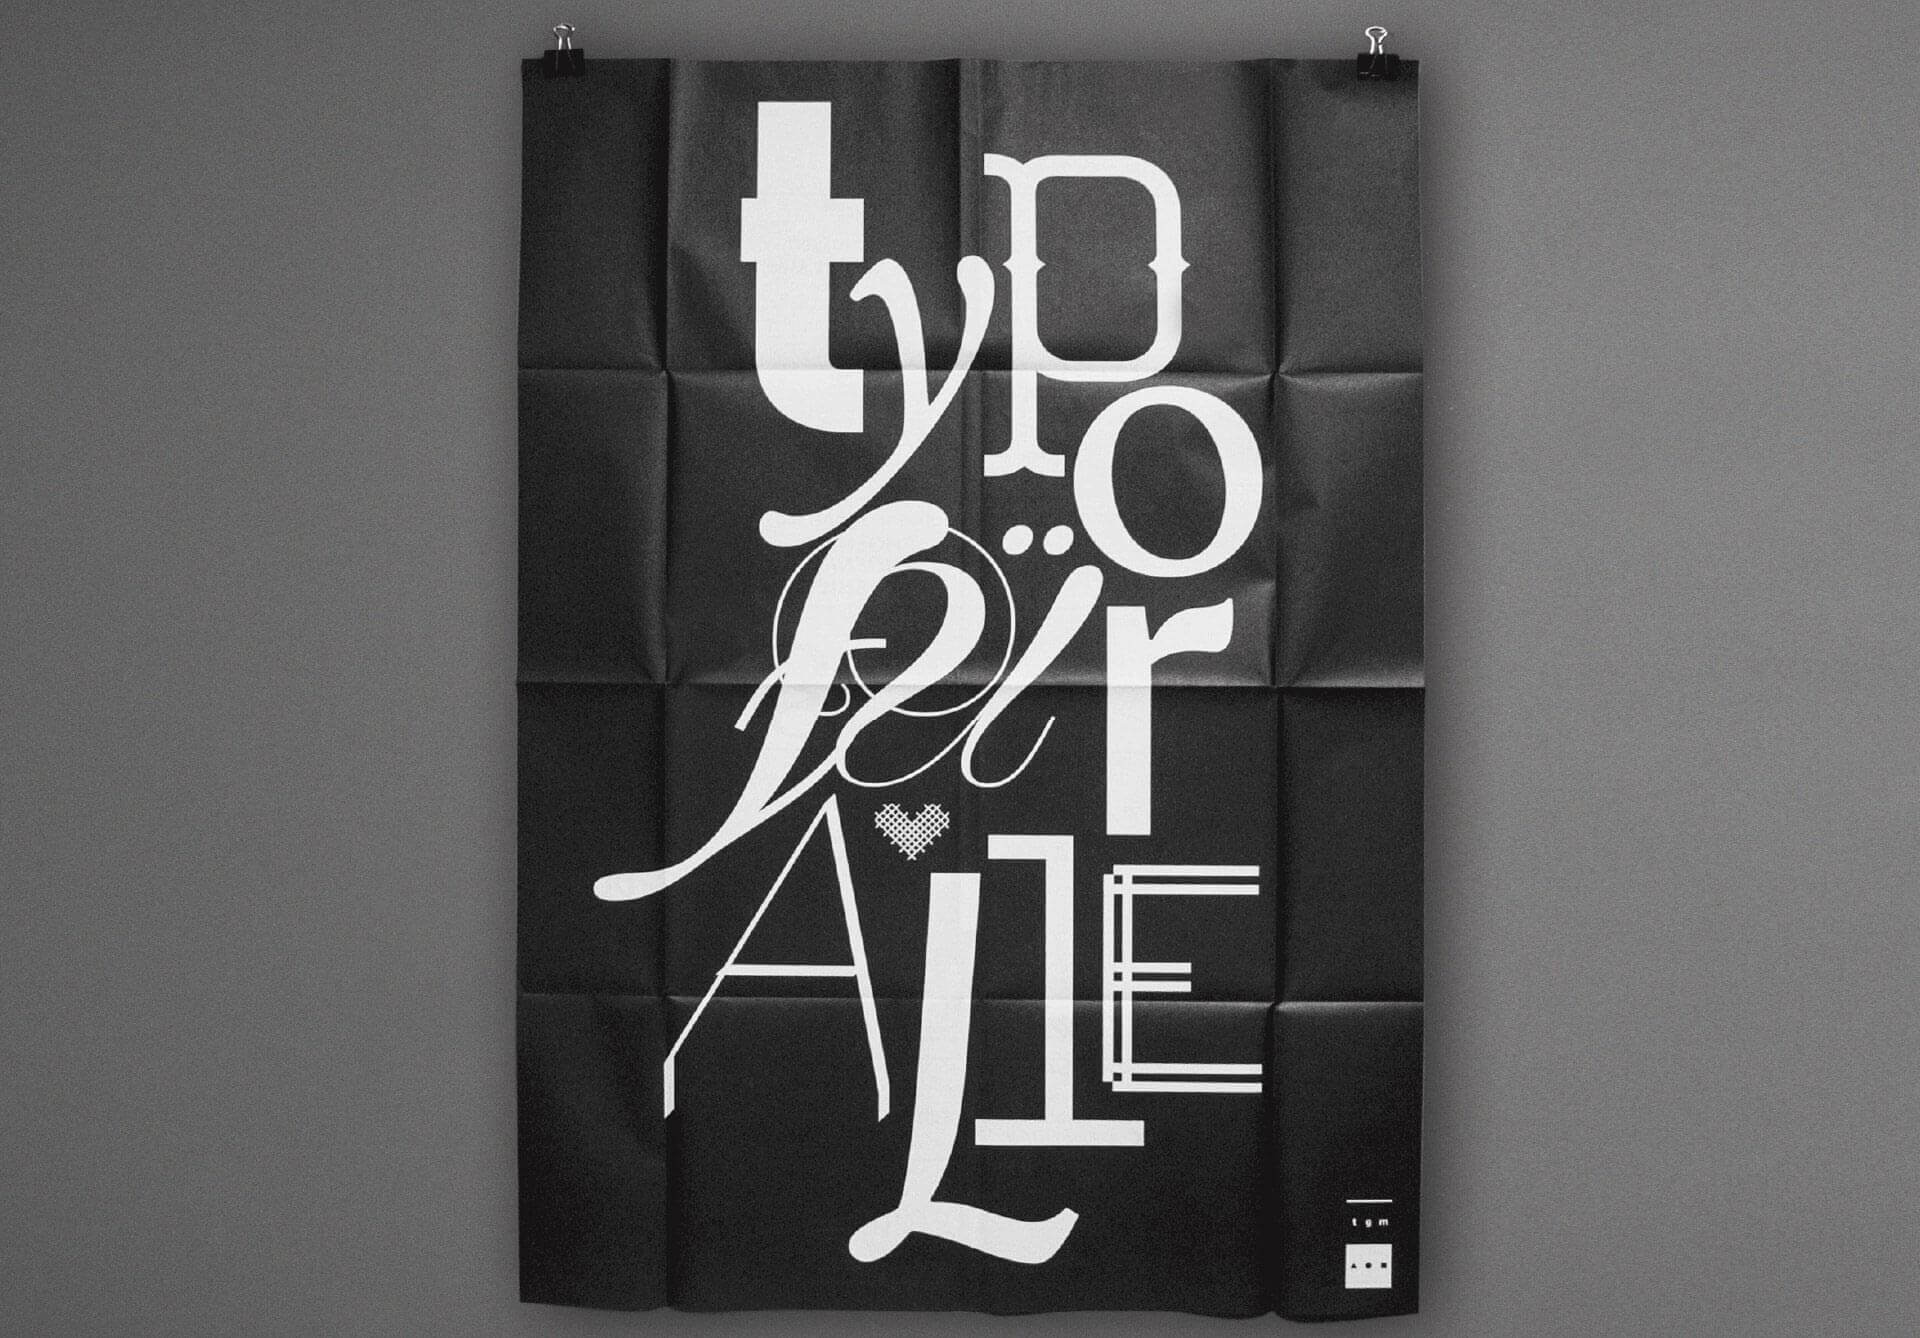 Plakat mit der weißen Typografie Typo für alle auf schwarzem Hintergrund für die Typografische Gesellschaft München